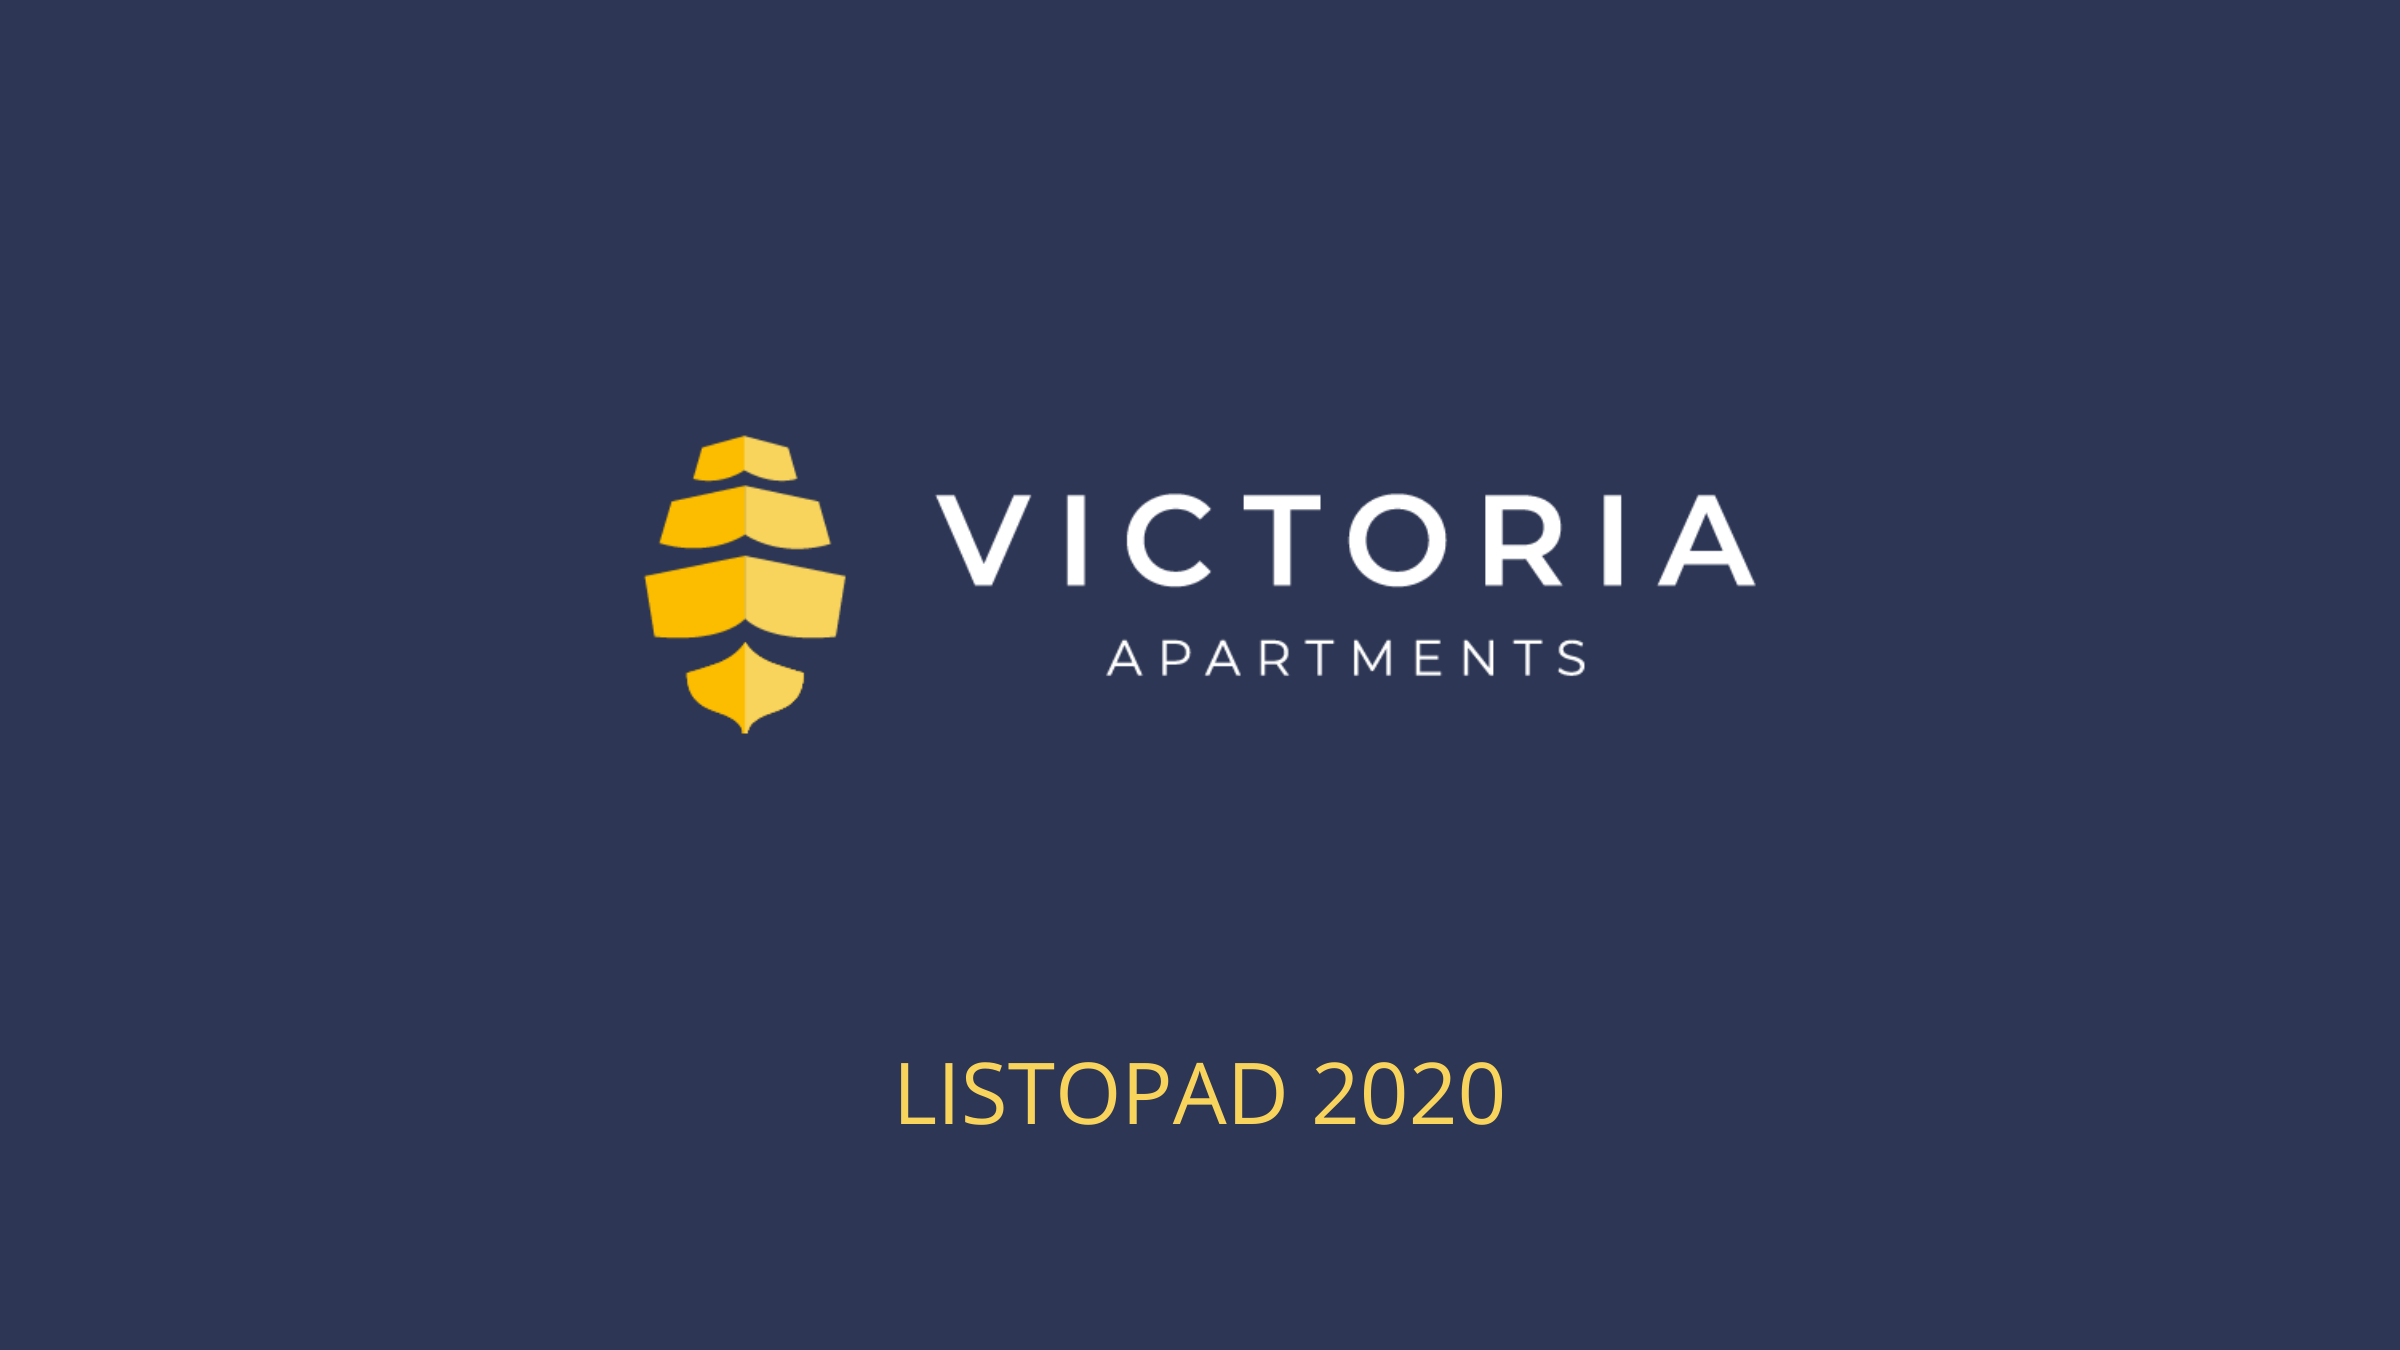 Victoria, Dziennik budowy Victoria Apartments w Szczecinie - listopad 2020